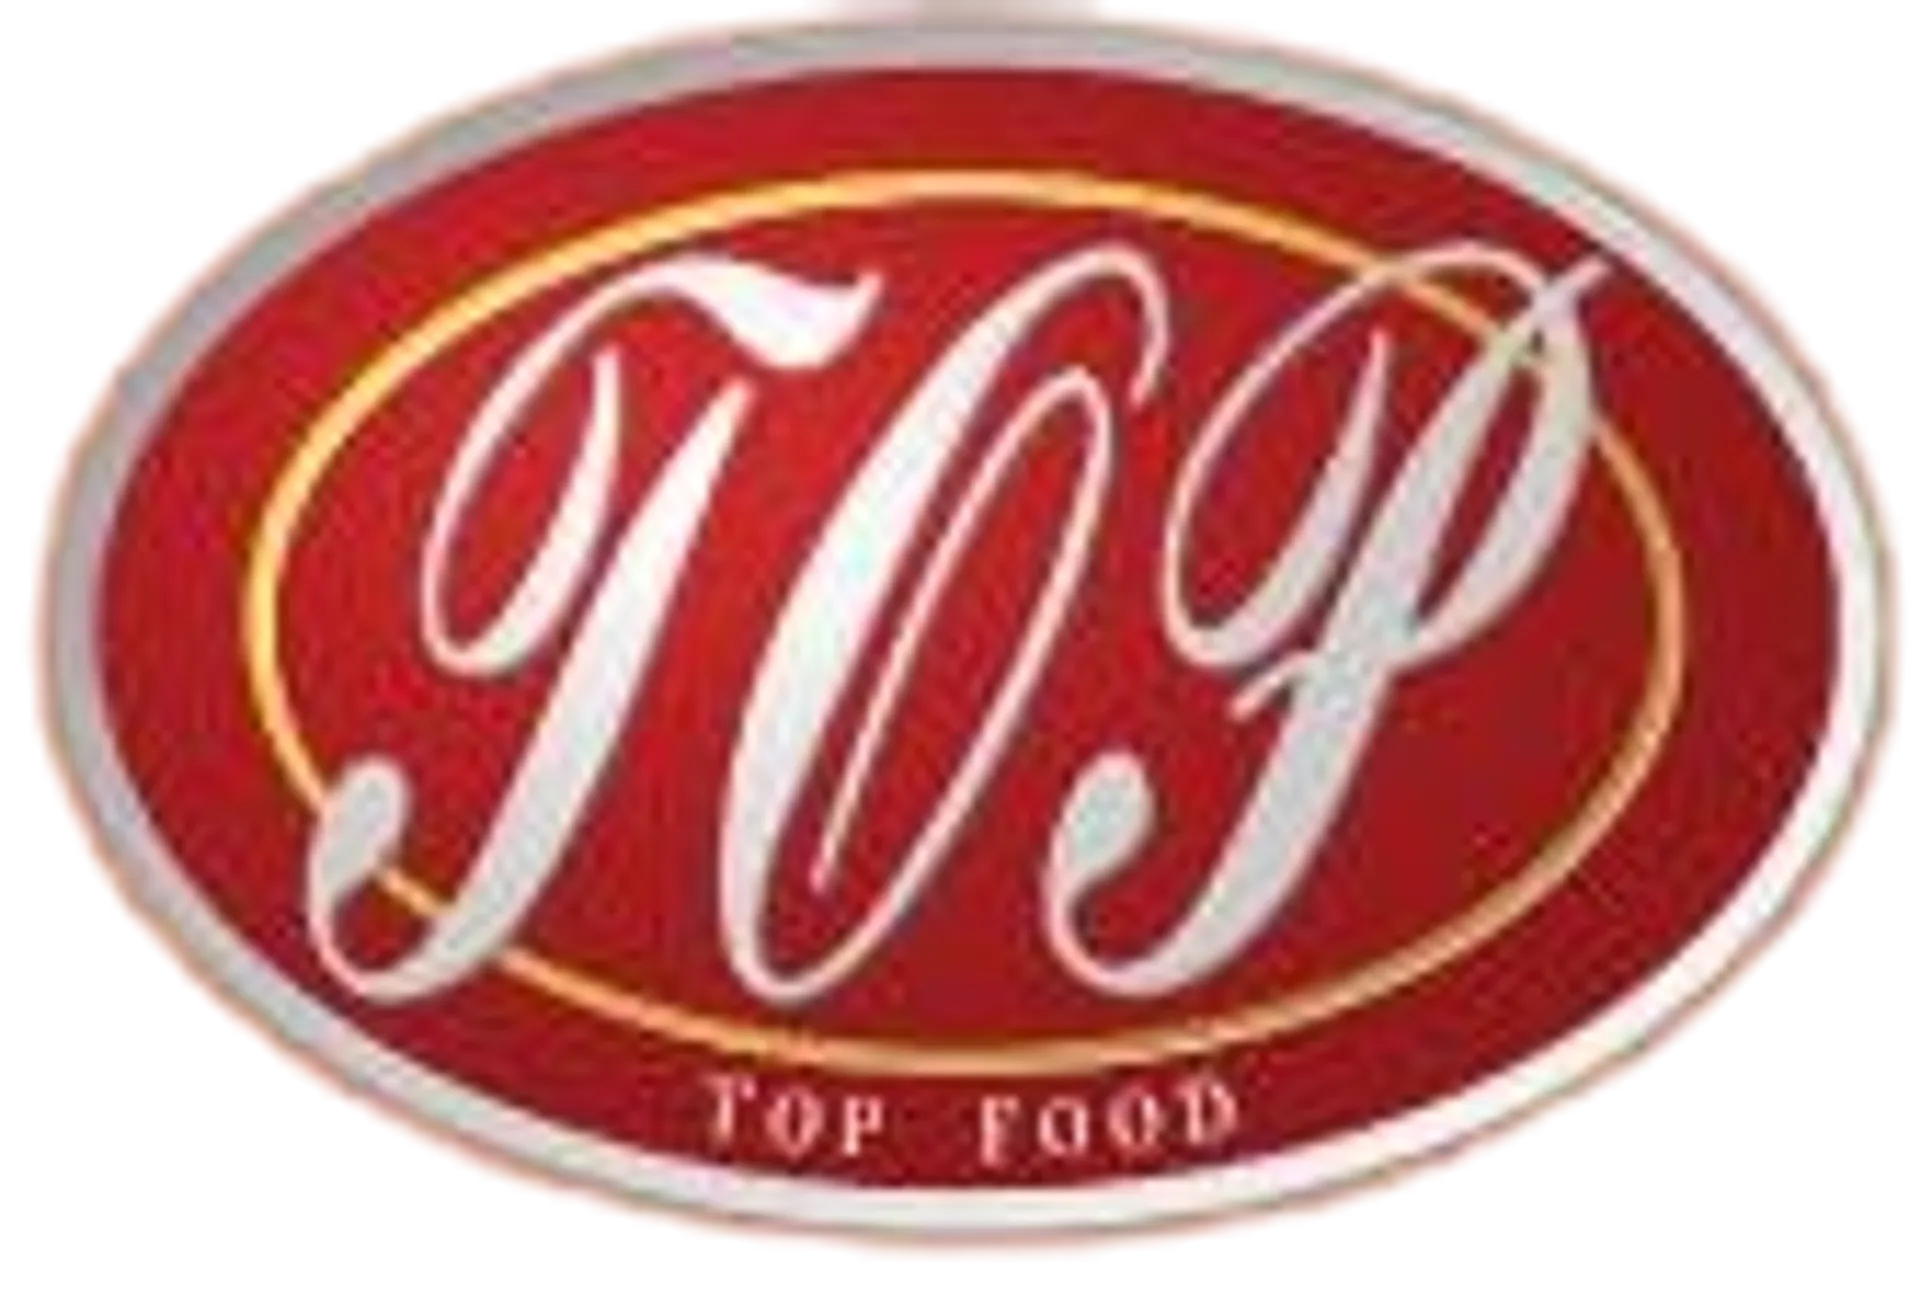 TOP FOOD SUPERMARKET logo of current flyer